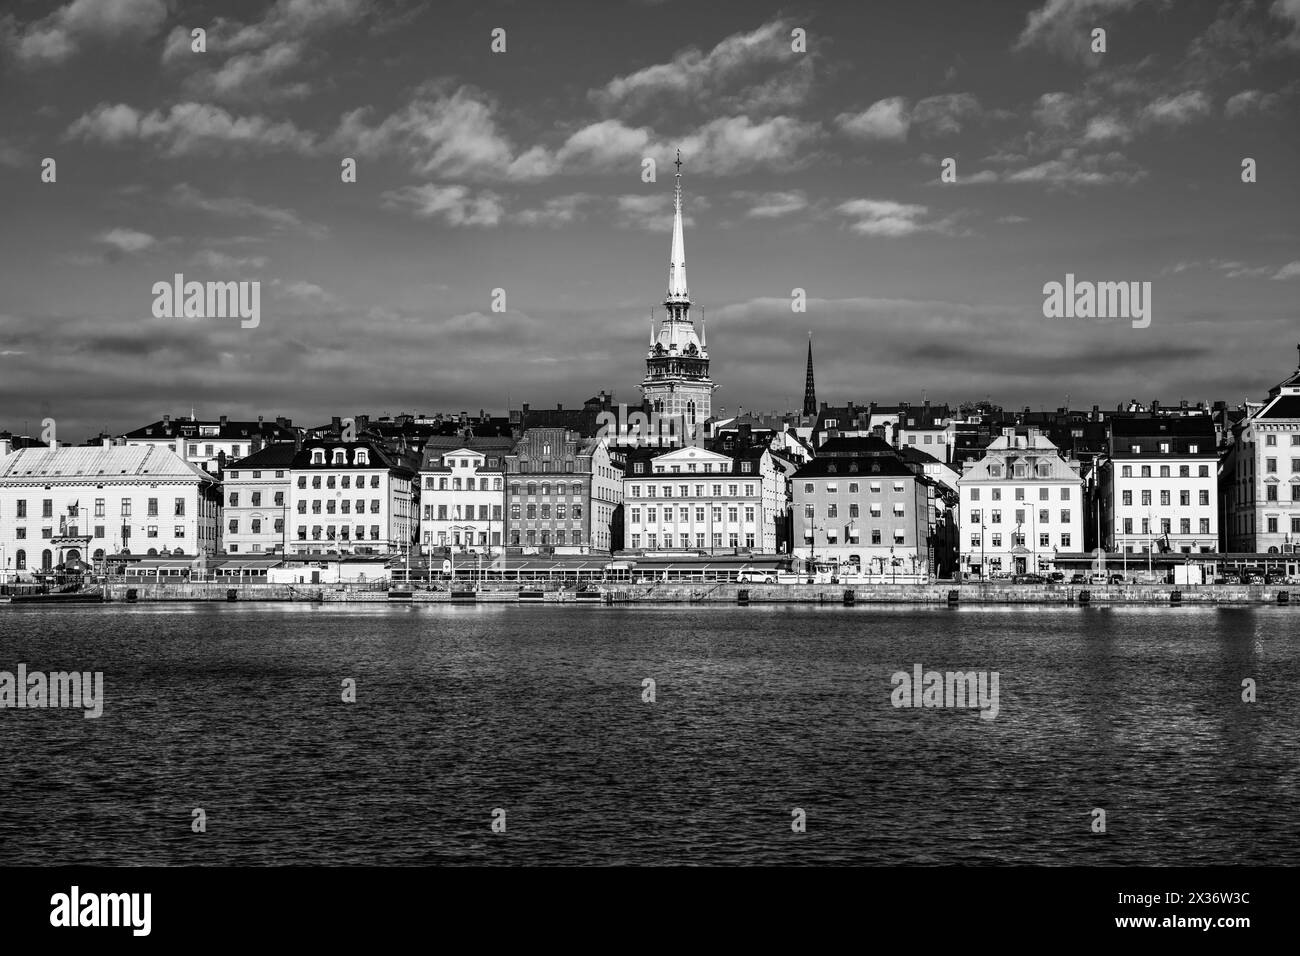 Panoramablick auf farbenfrohe Häuser in der schwedischen Altstadt: Gamla Stan, am Ufer des Meeres in Stockholm, Schweden. Schwarzweiß-Fotografie. Stockfoto